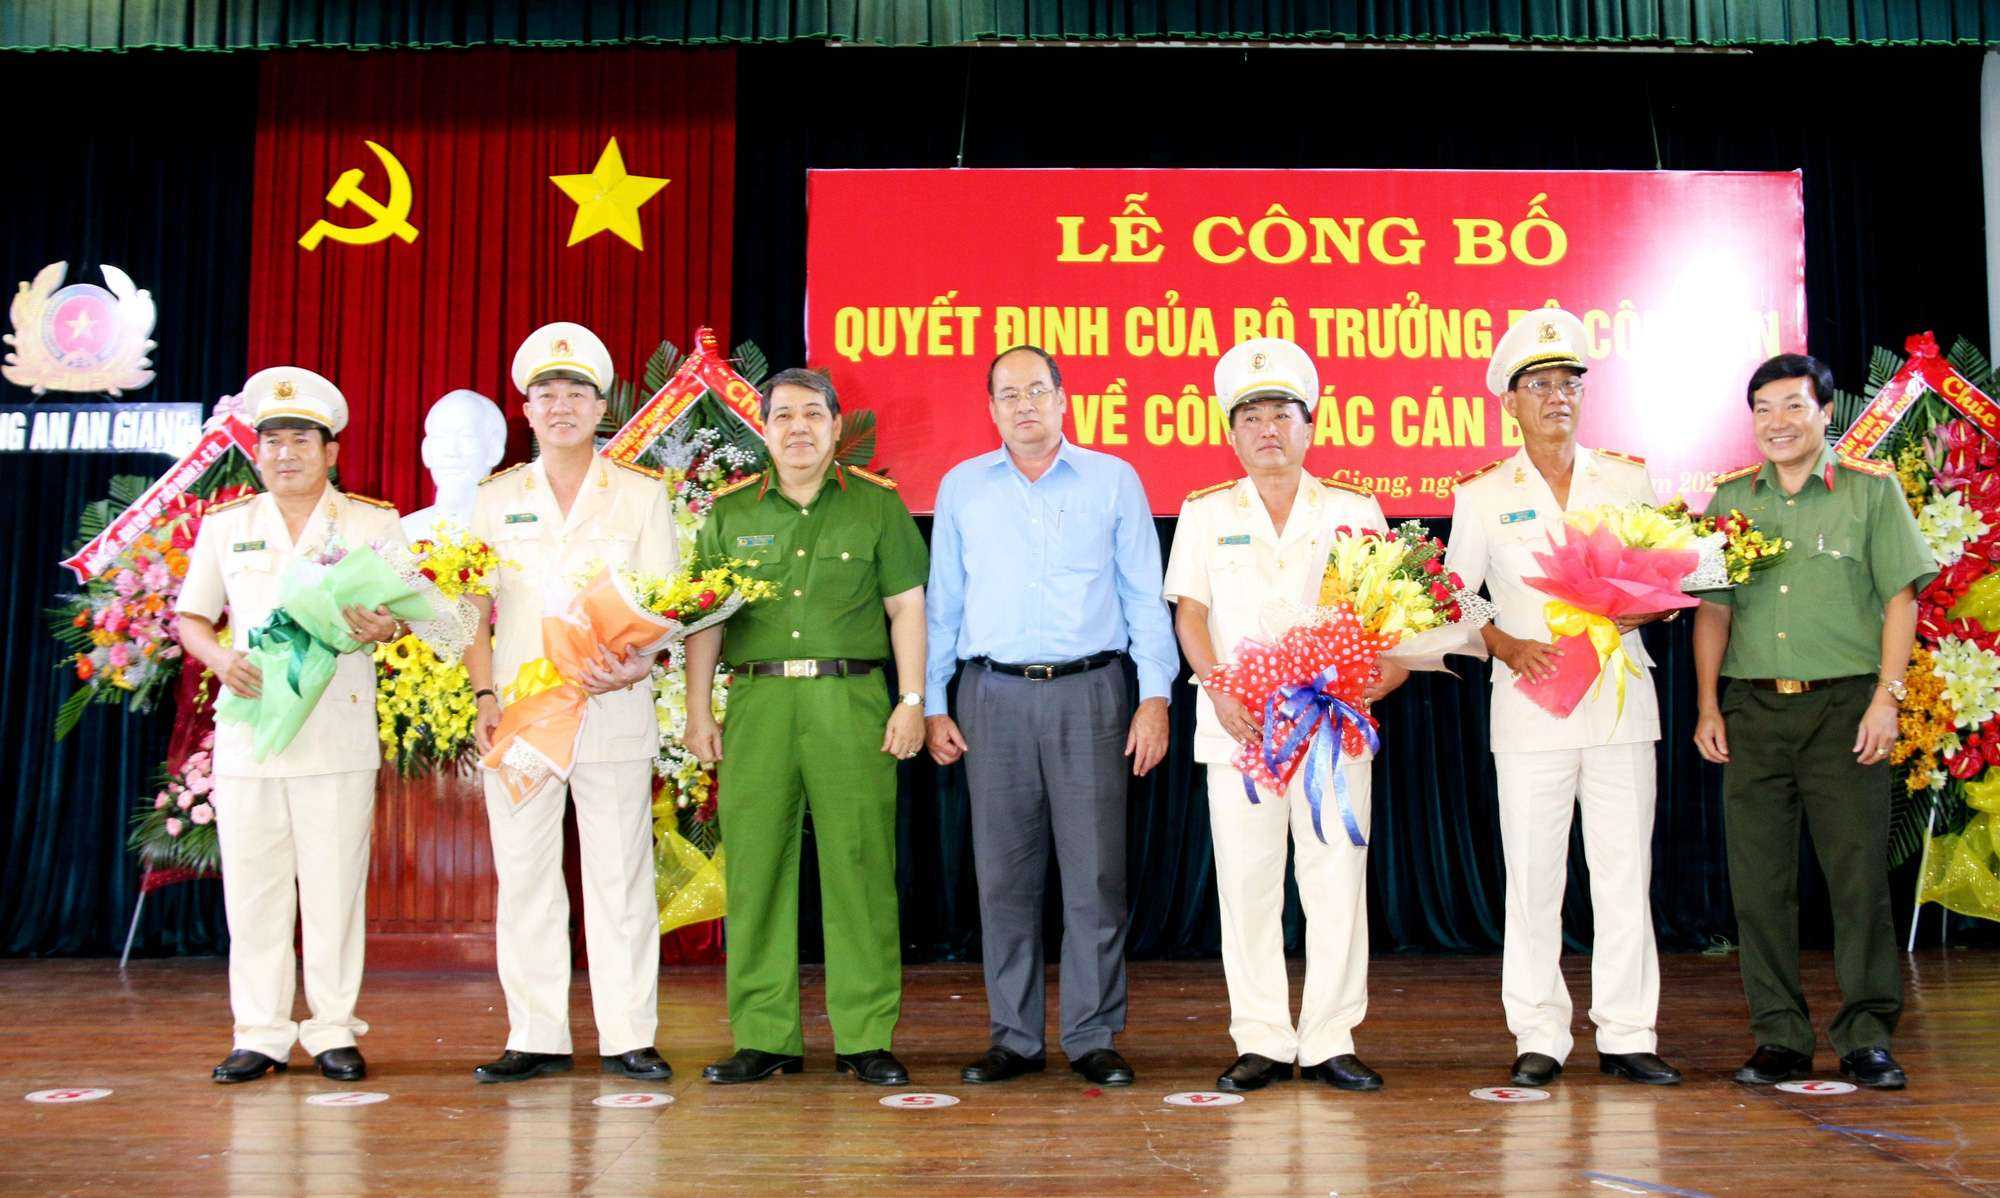 Phó Giám đốc Công an TP Cần Thơ được bổ nhiệm làm Giám đốc Công an tỉnh An Giang - Ảnh 2.